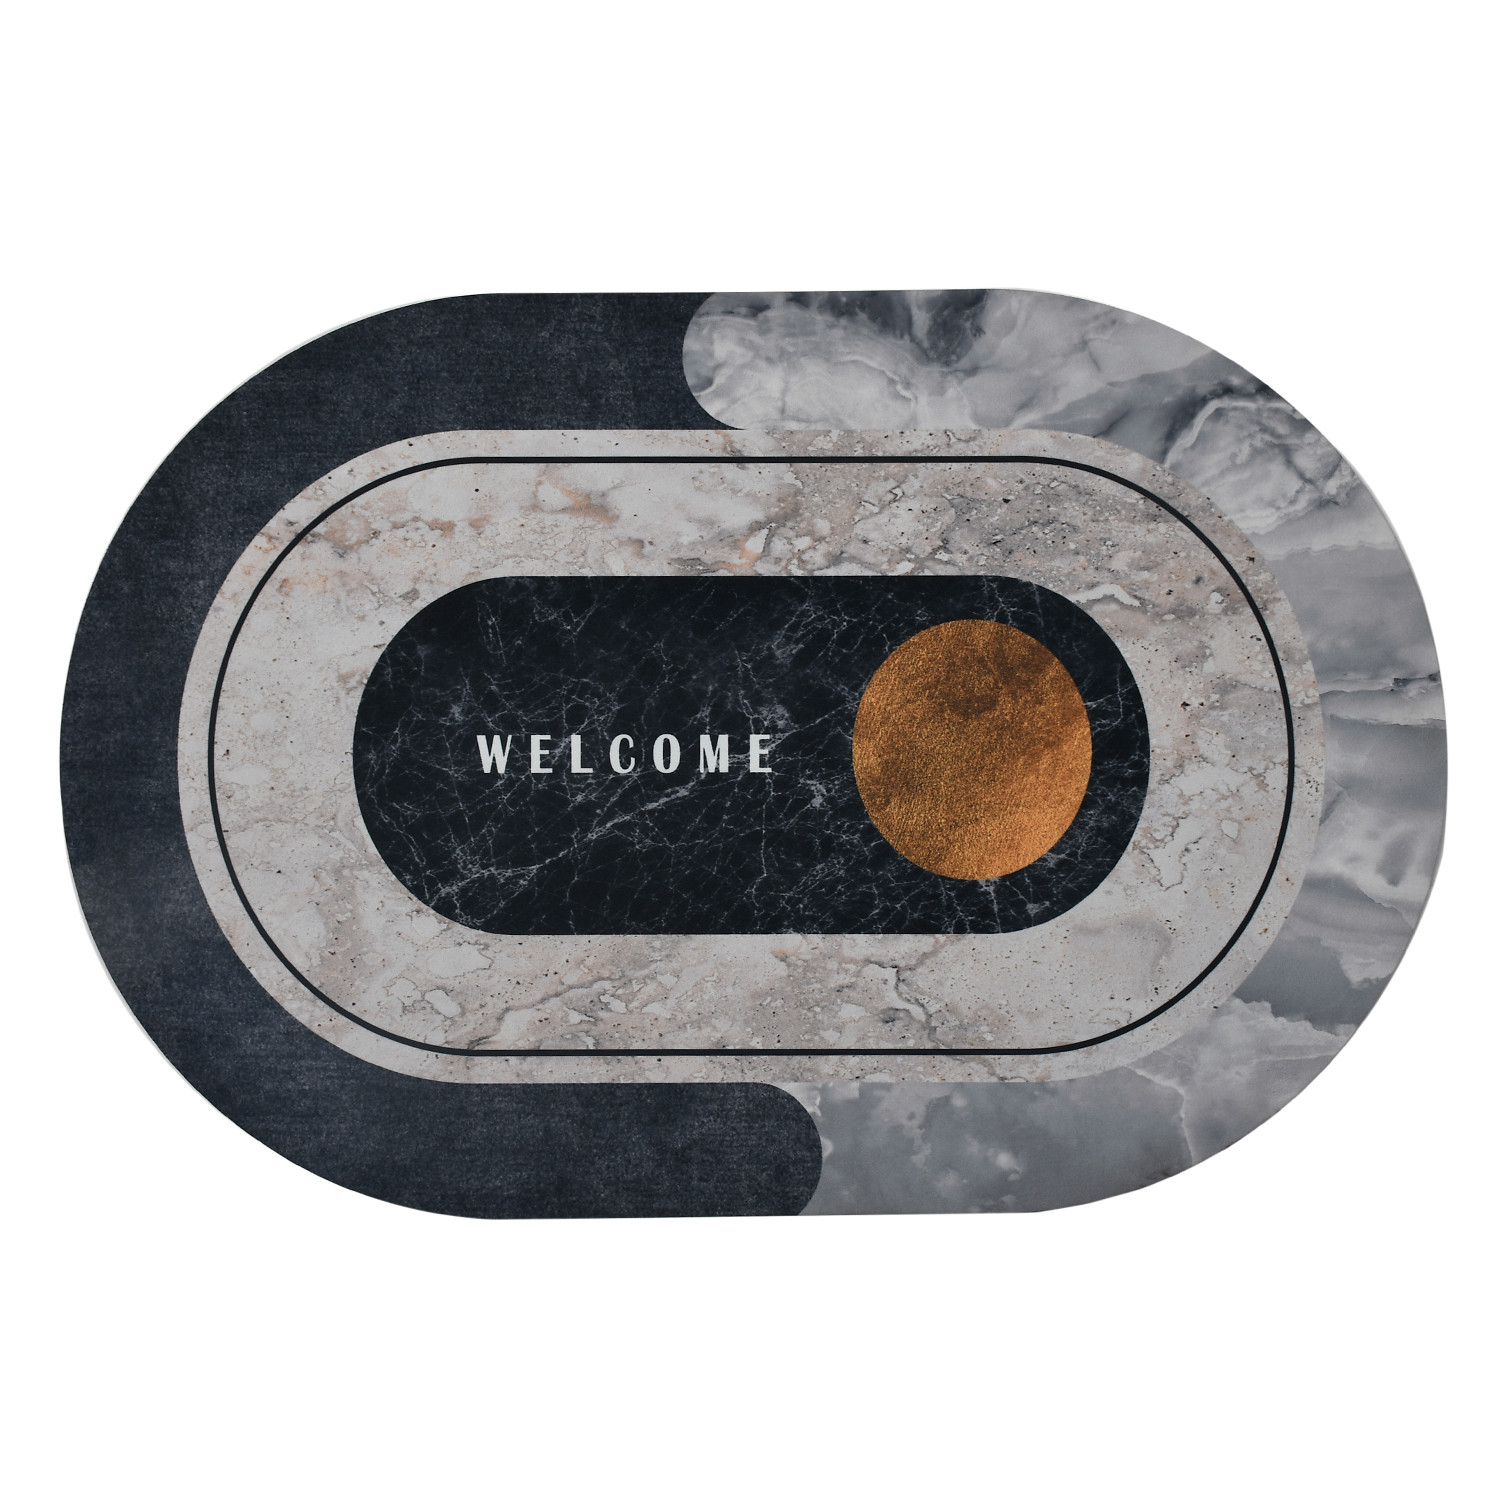 Kuber Industries Doormat|Doormat for Door Entrance|Doormats for Rooms|Doormat for Home|Memory Foam welcome Doormat (White)